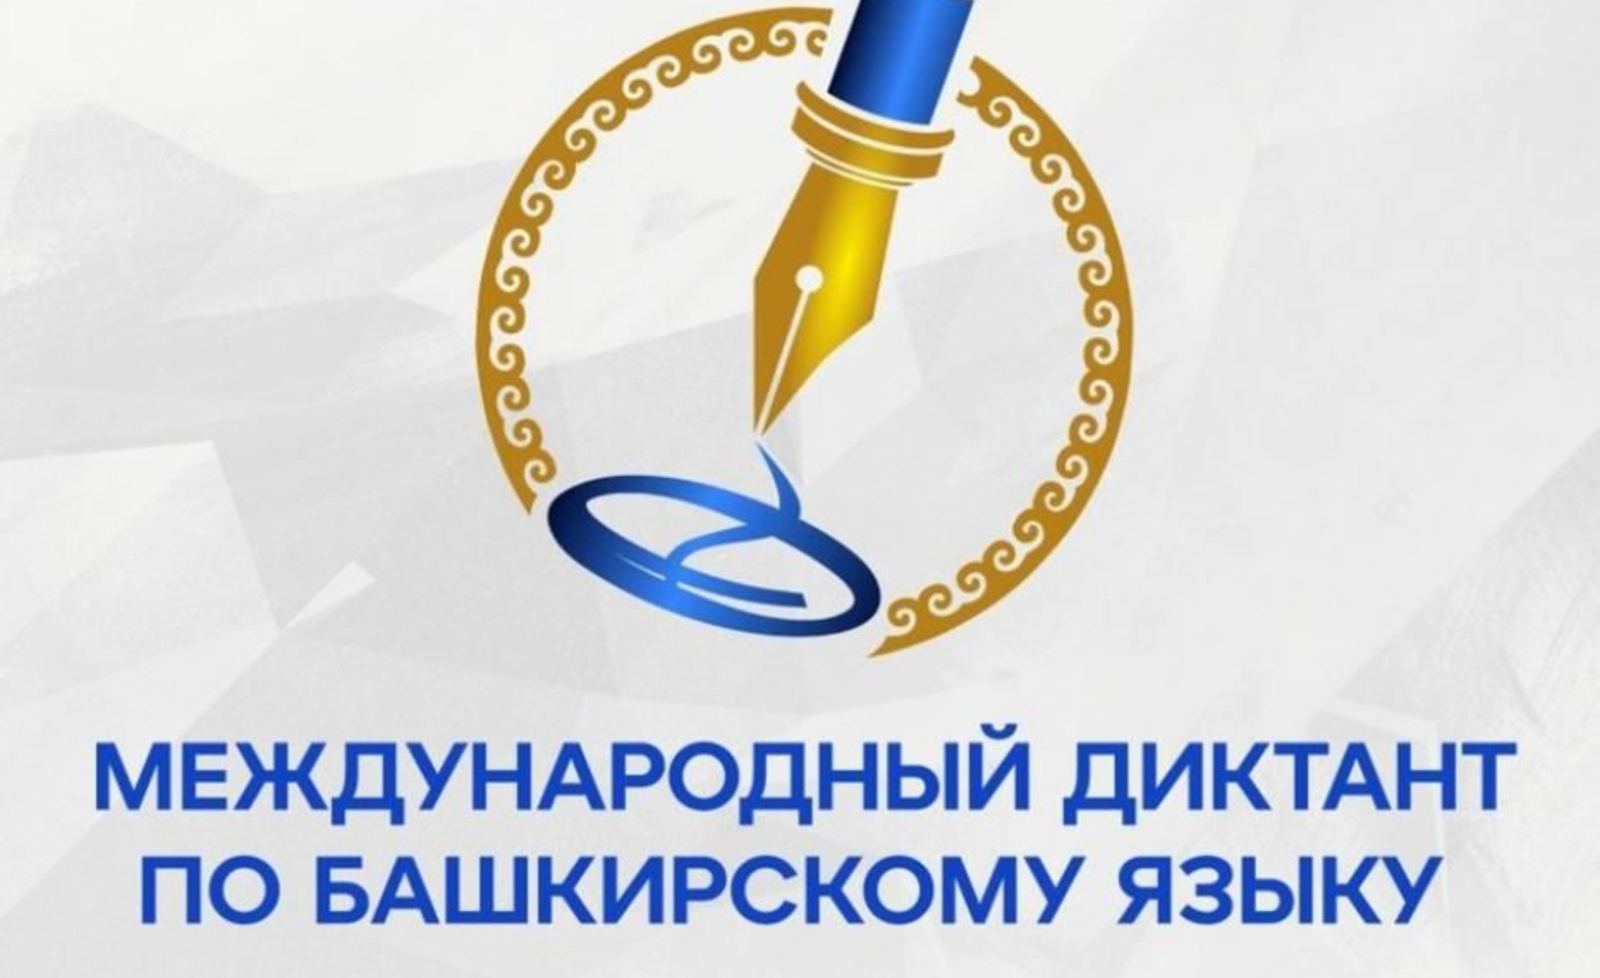 В десятый раз пройдет "Международный диктант по башкирскому языку"